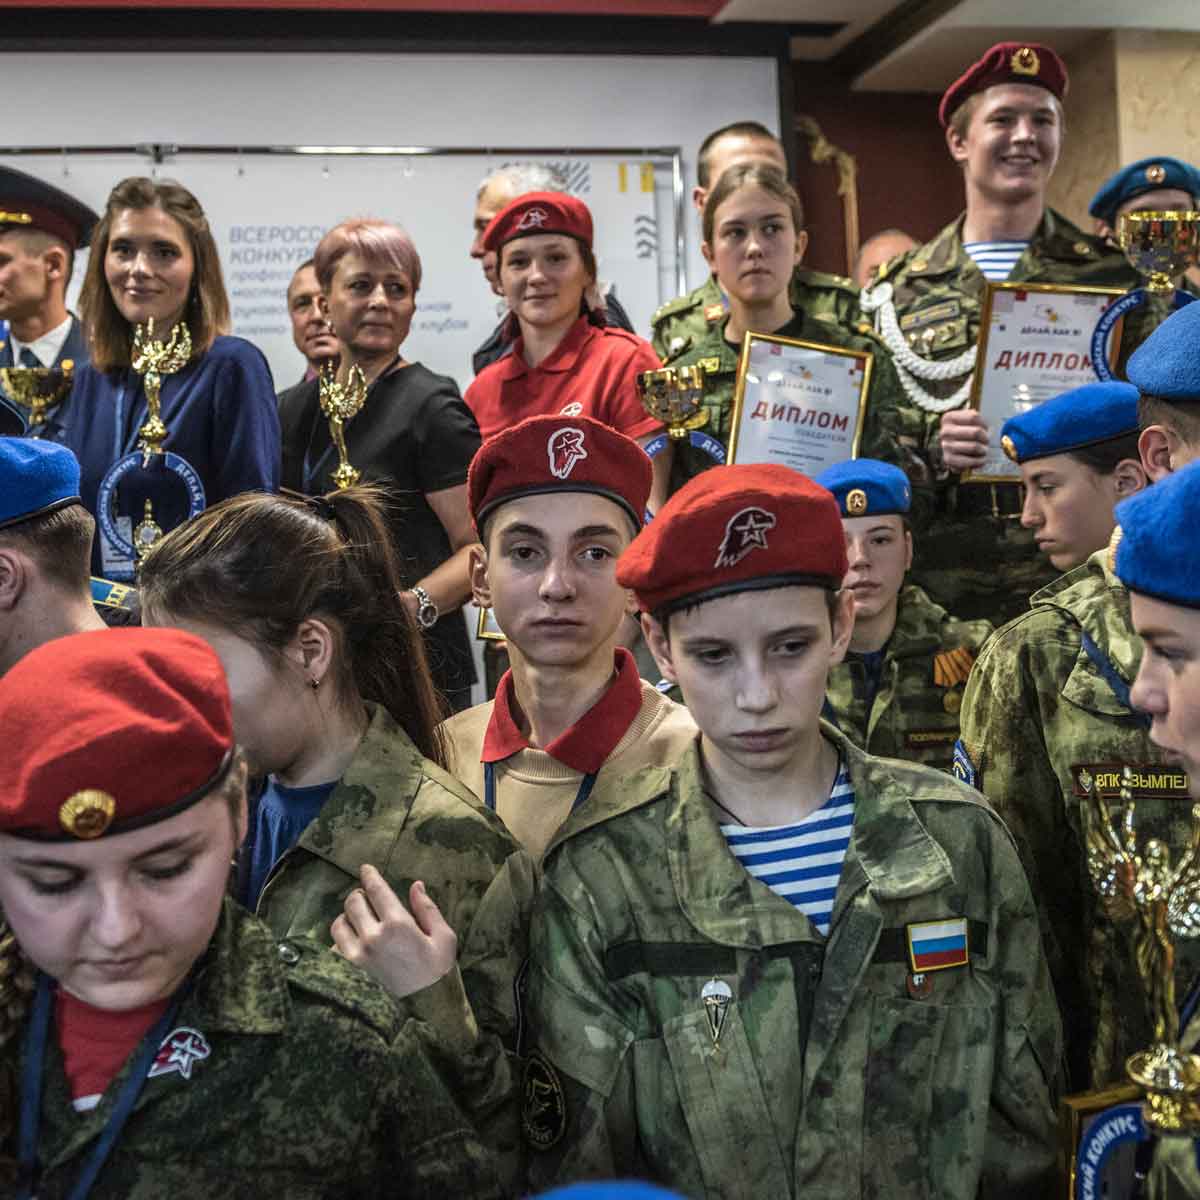 Rusia busca apoyo a la guerra entre sus estudiantes. / Foto: Anton Troianovski / NYT